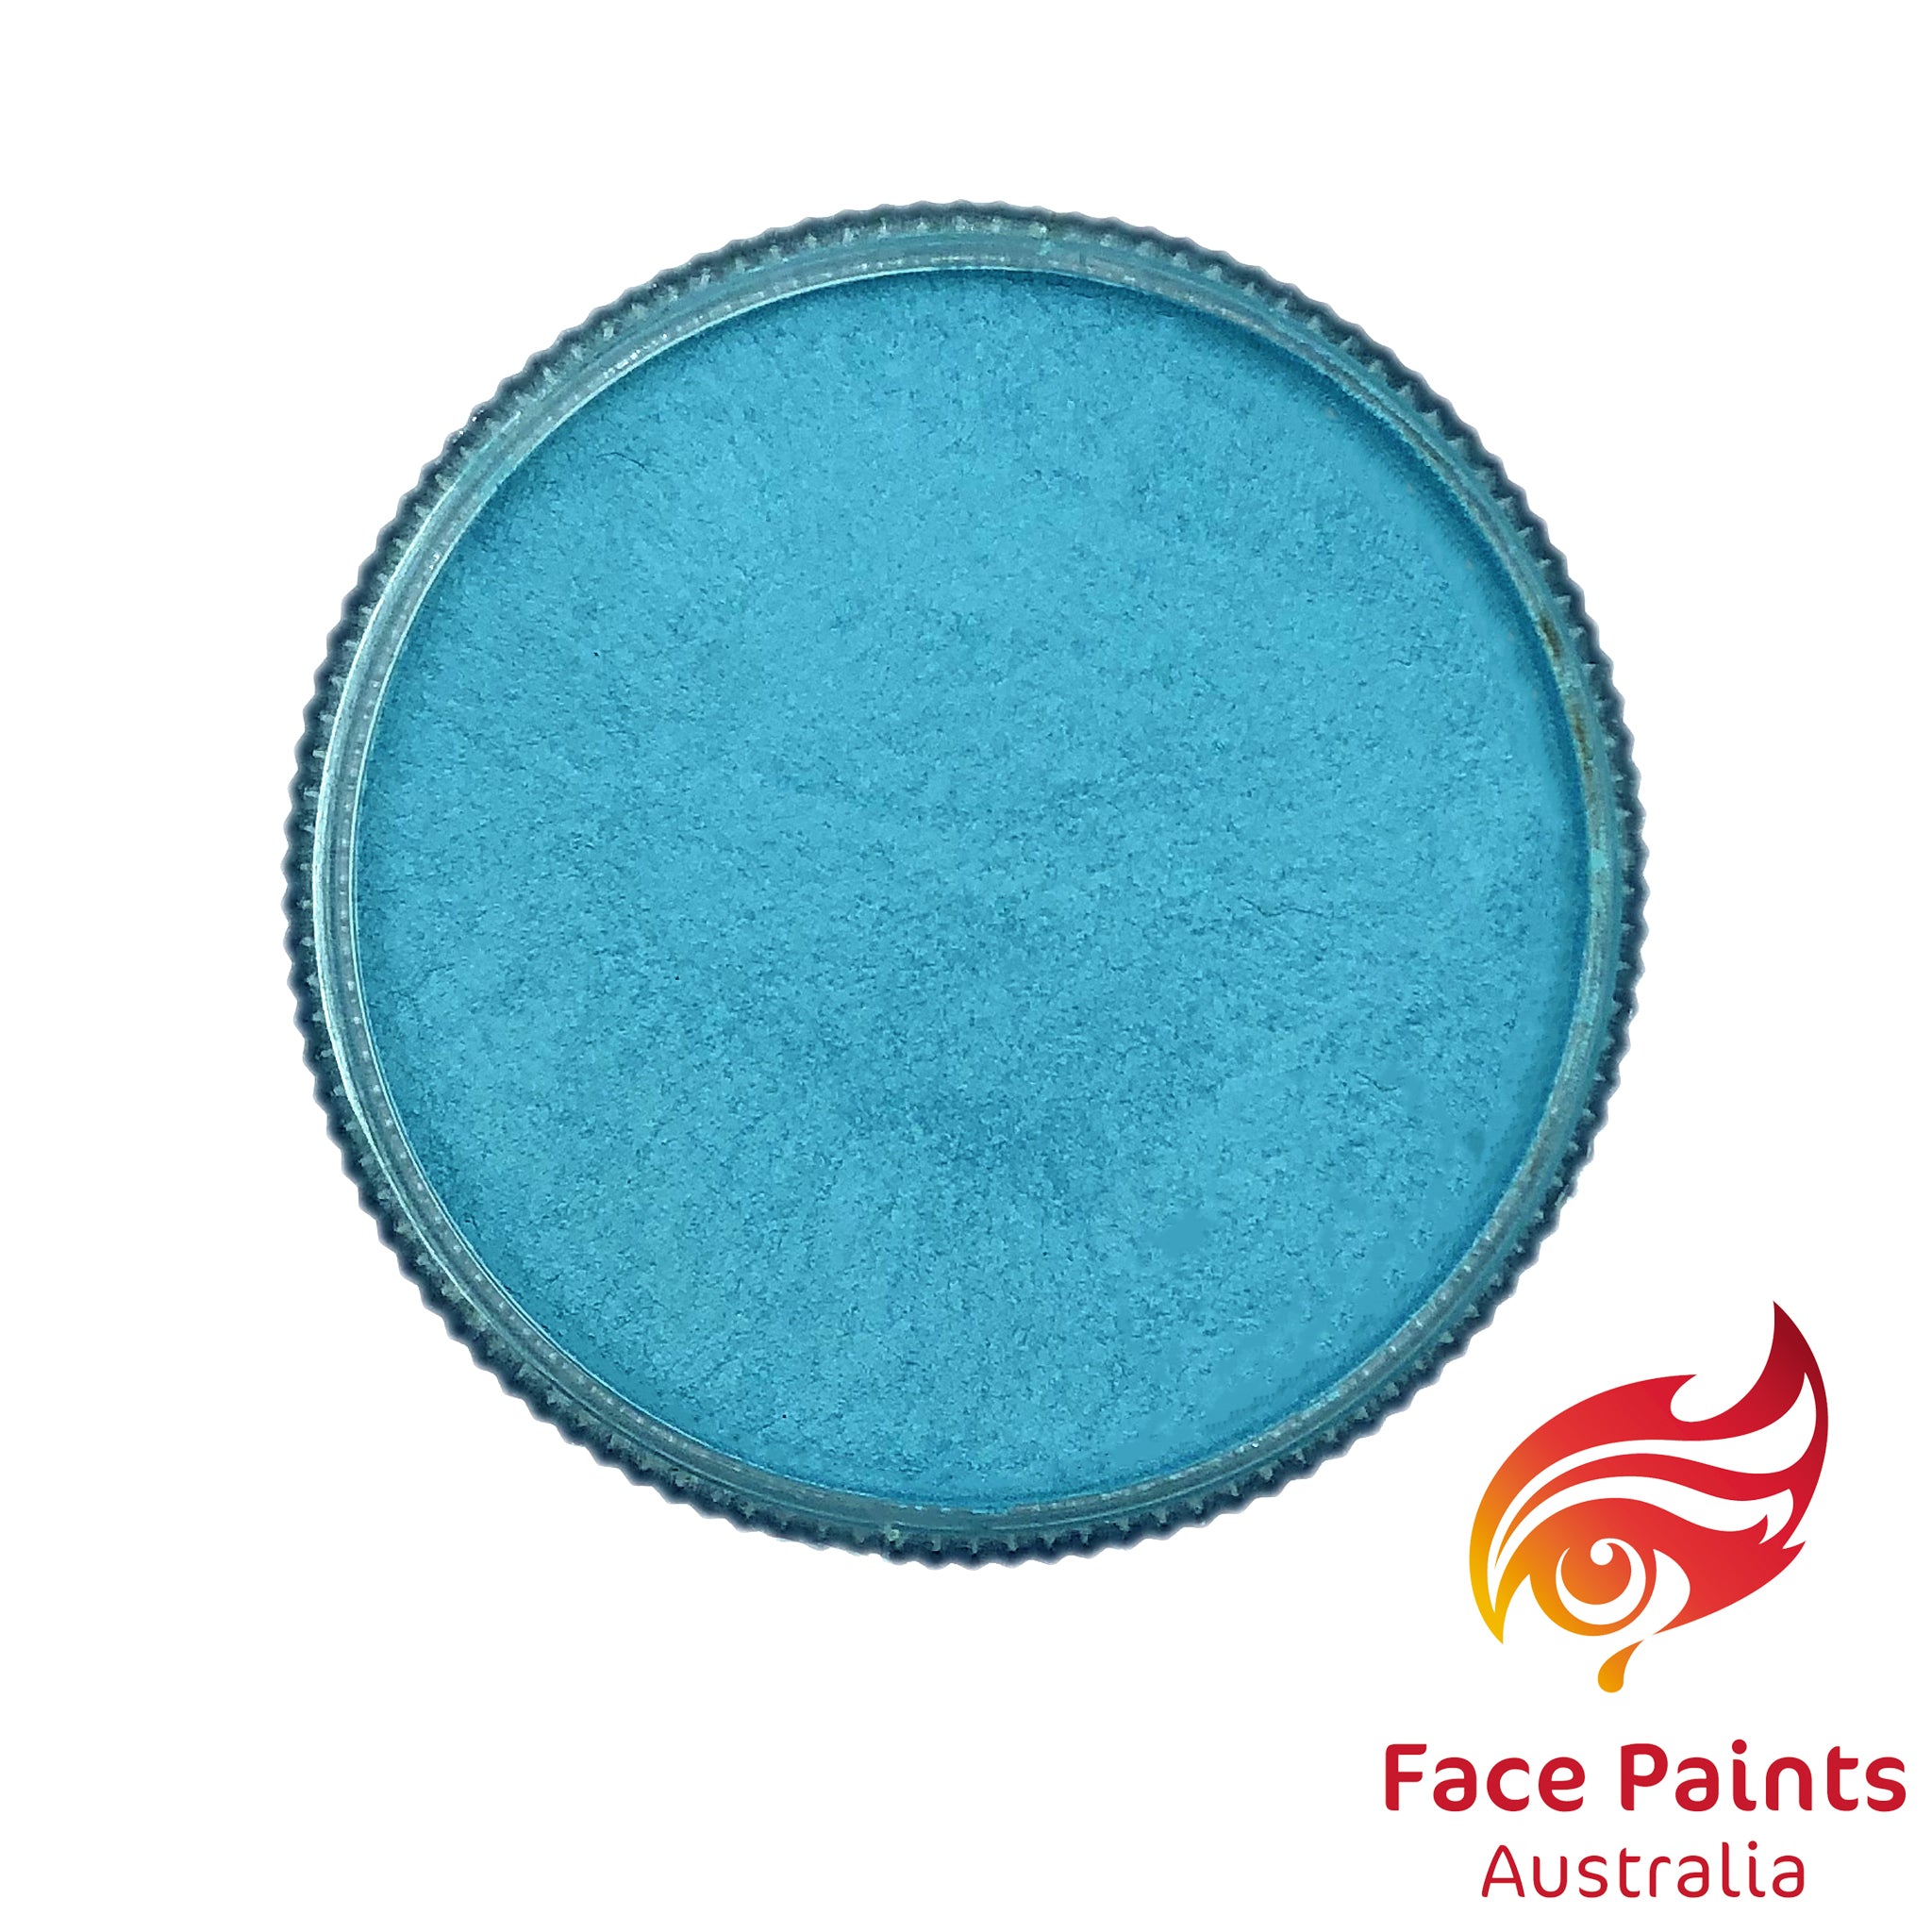 Face Paints Australia Metalic 30g Sky Blue